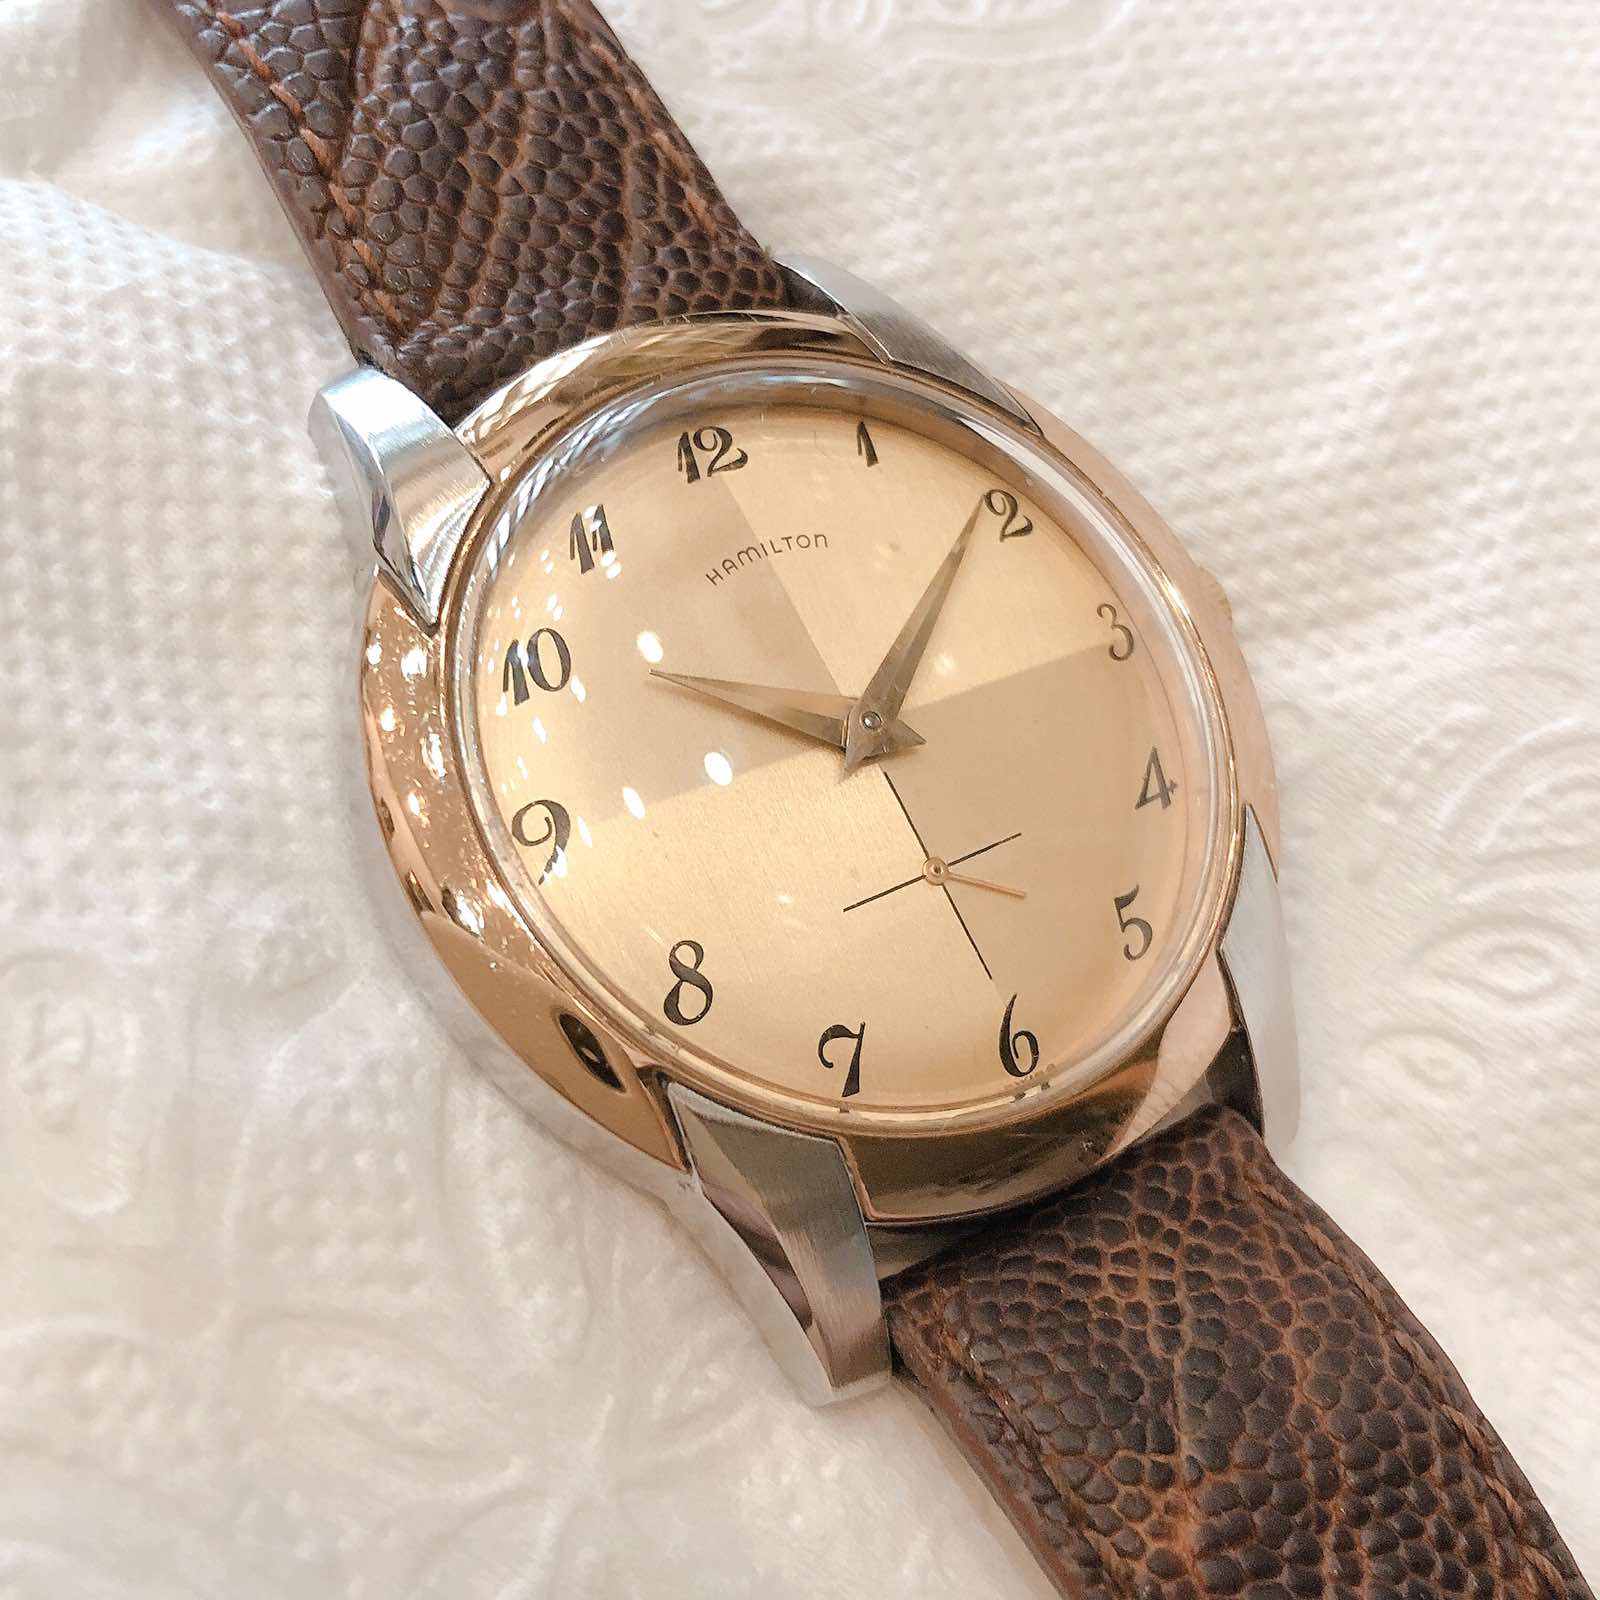 Đồng hồ cổ Hamilton lên dây DMi lacke vàng hồng 18k chính hãng Thuỵ Sĩ 